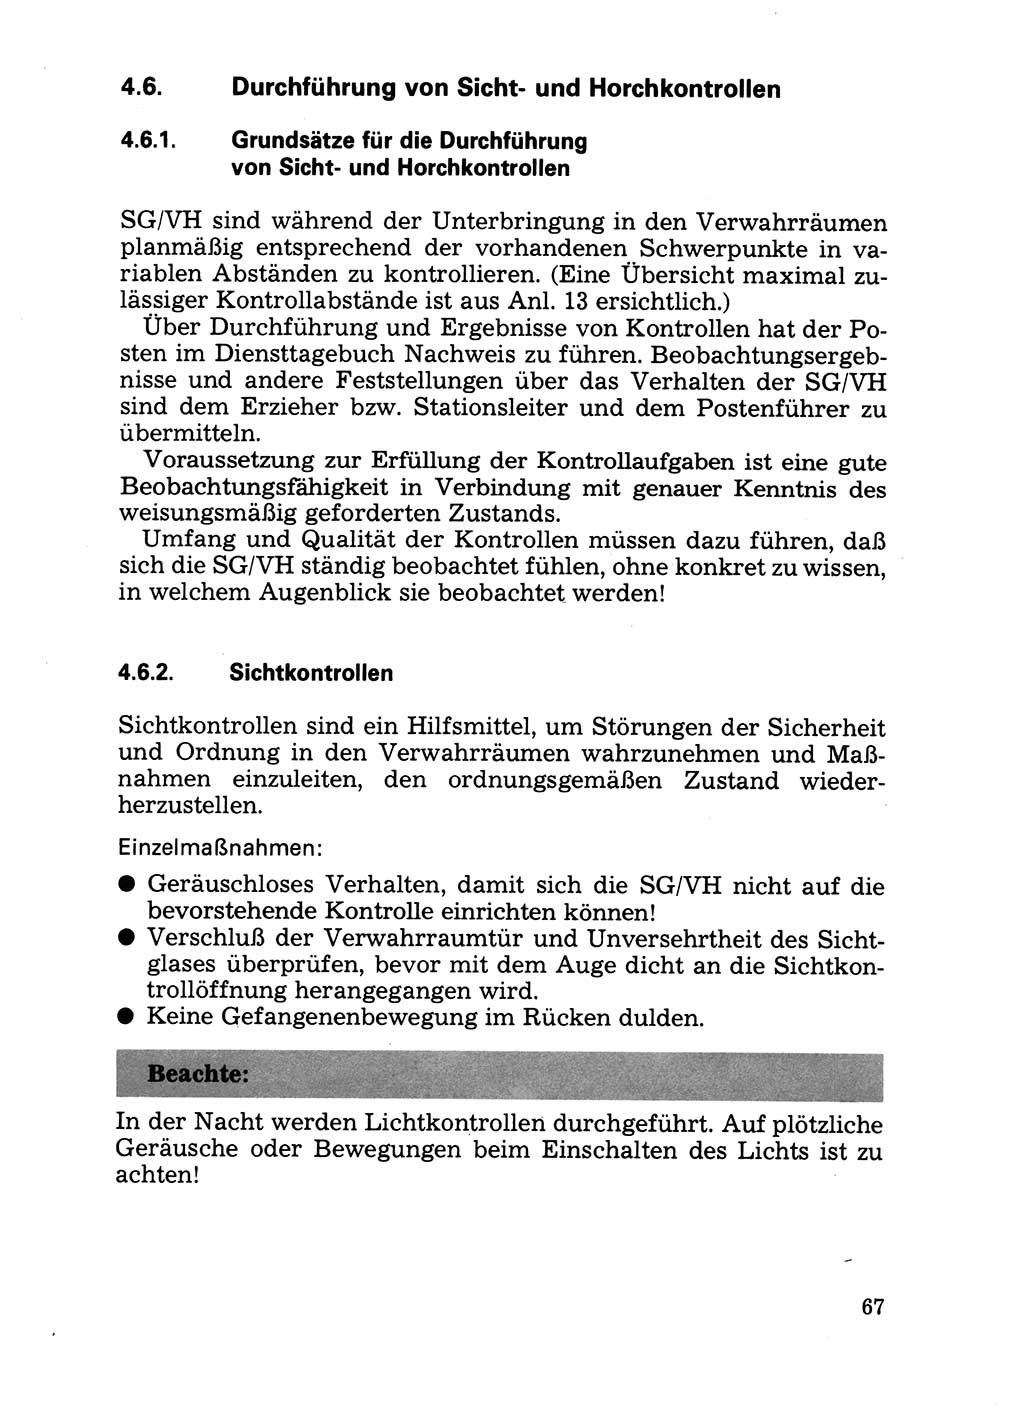 Handbuch für operative Dienste, Abteilung Strafvollzug (SV) [Ministerium des Innern (MdI) Deutsche Demokratische Republik (DDR)] 1981, Seite 67 (Hb. op. D. Abt. SV MdI DDR 1981, S. 67)